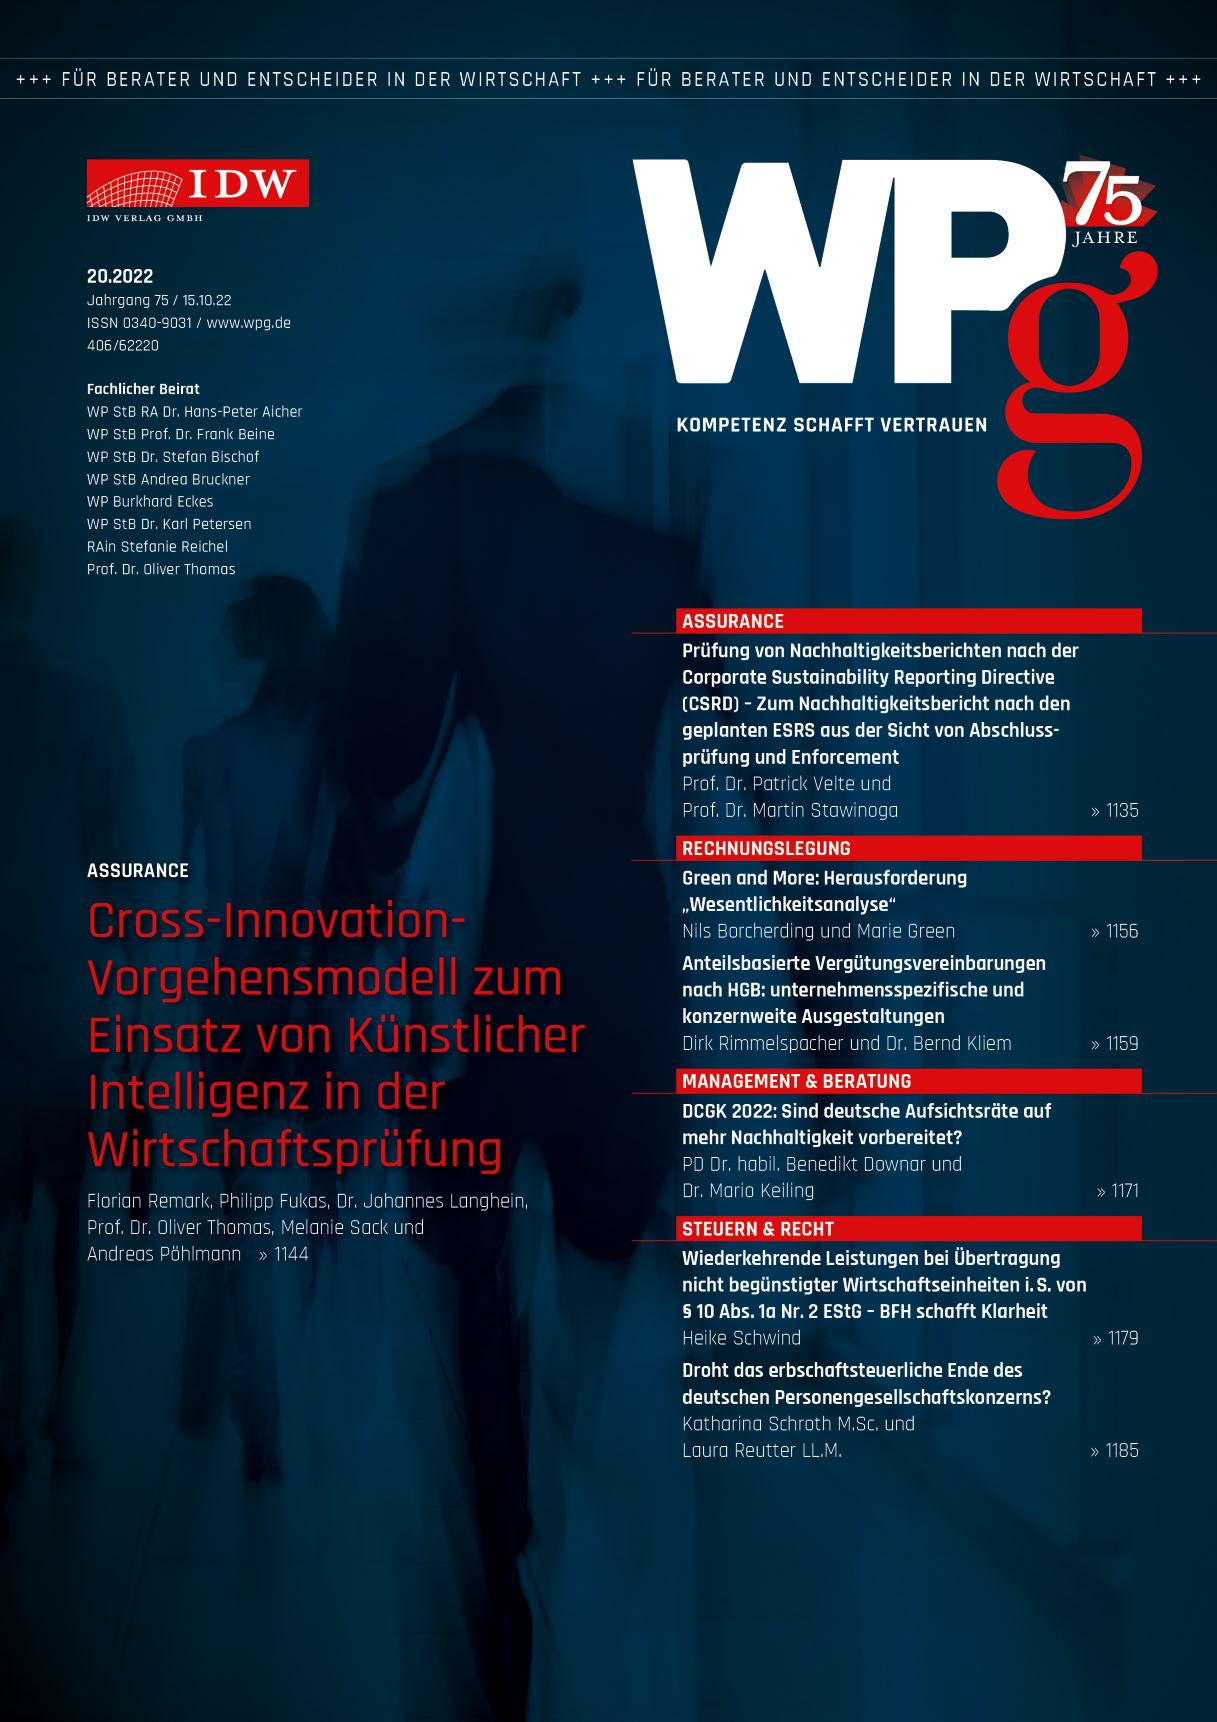 WPg - Die Wirtschaftsprüfung 20/2022